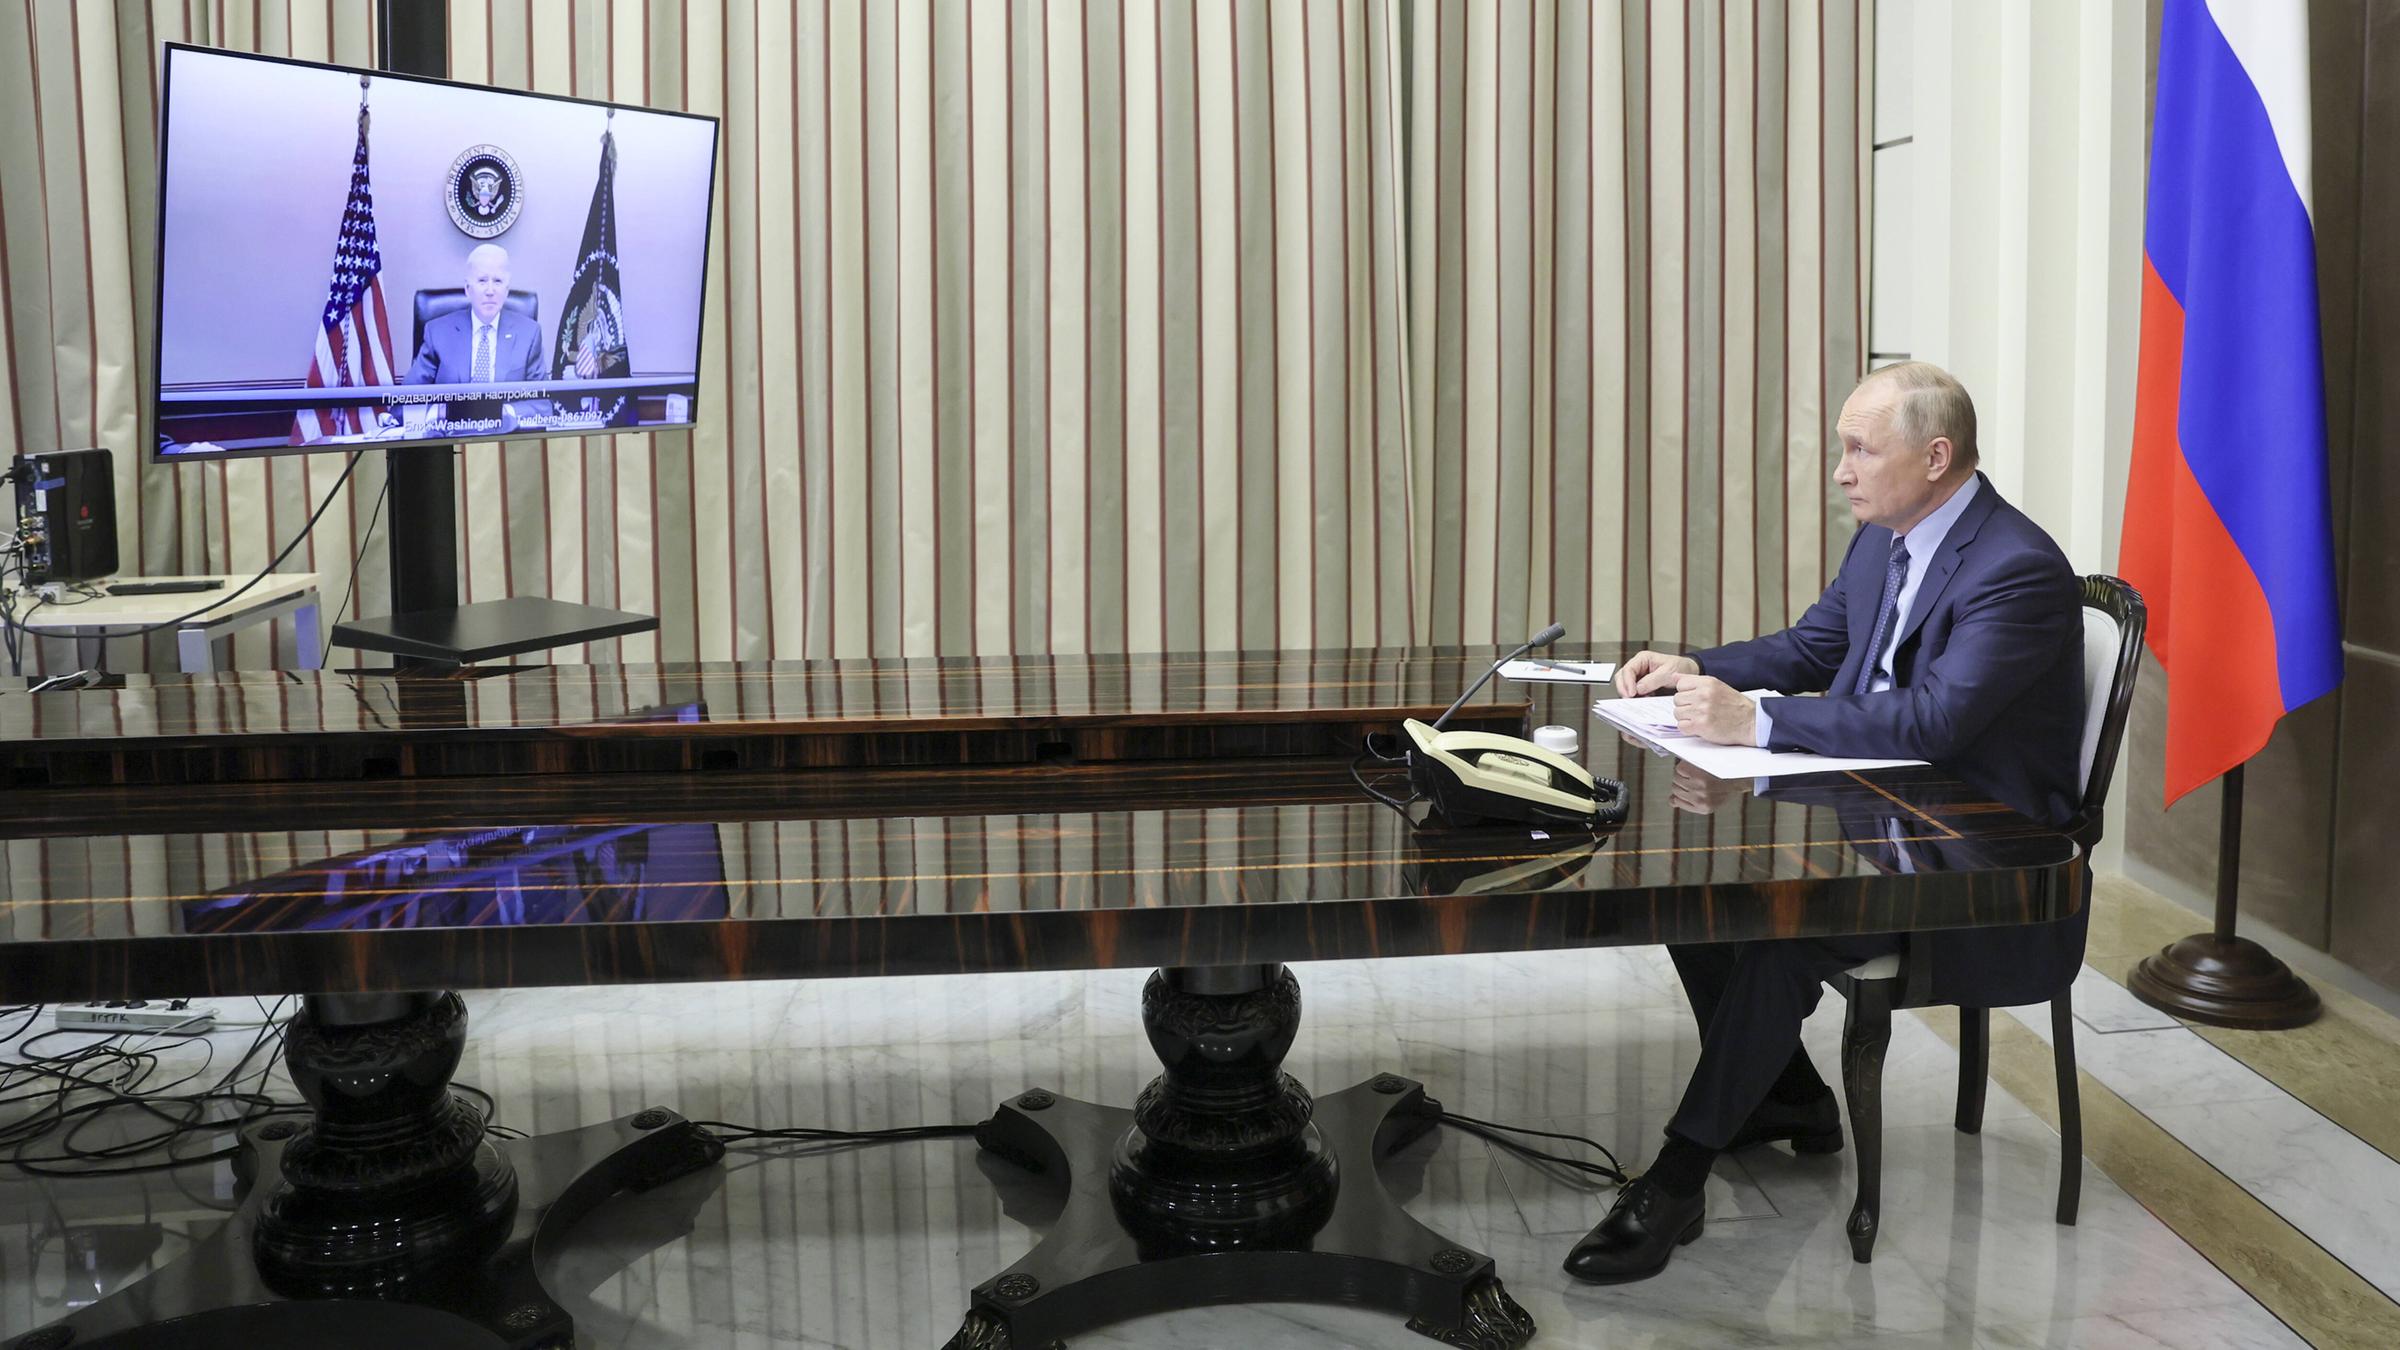 Der russische Präsident Vladimir Putin sitzt an einem langen, mächtigen...</p>

                        <a href=